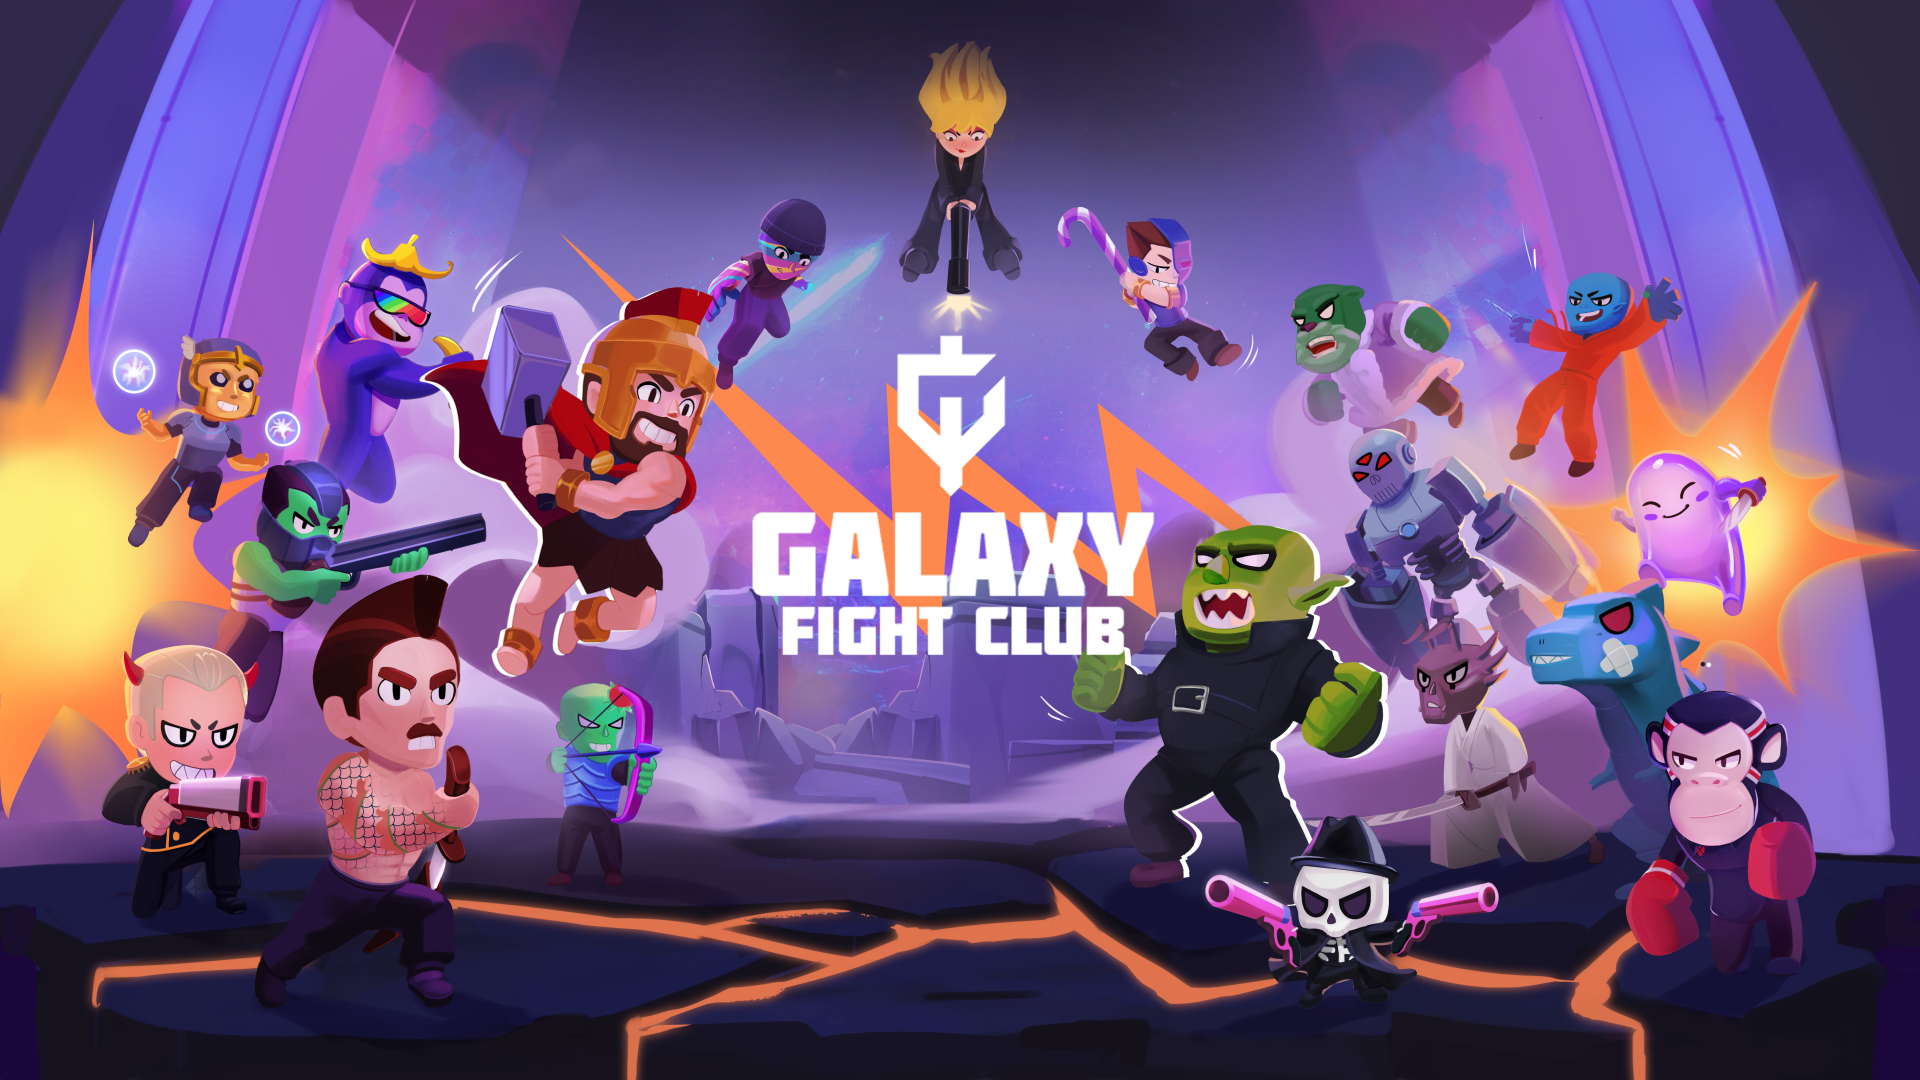 Galaxy Fight Club background